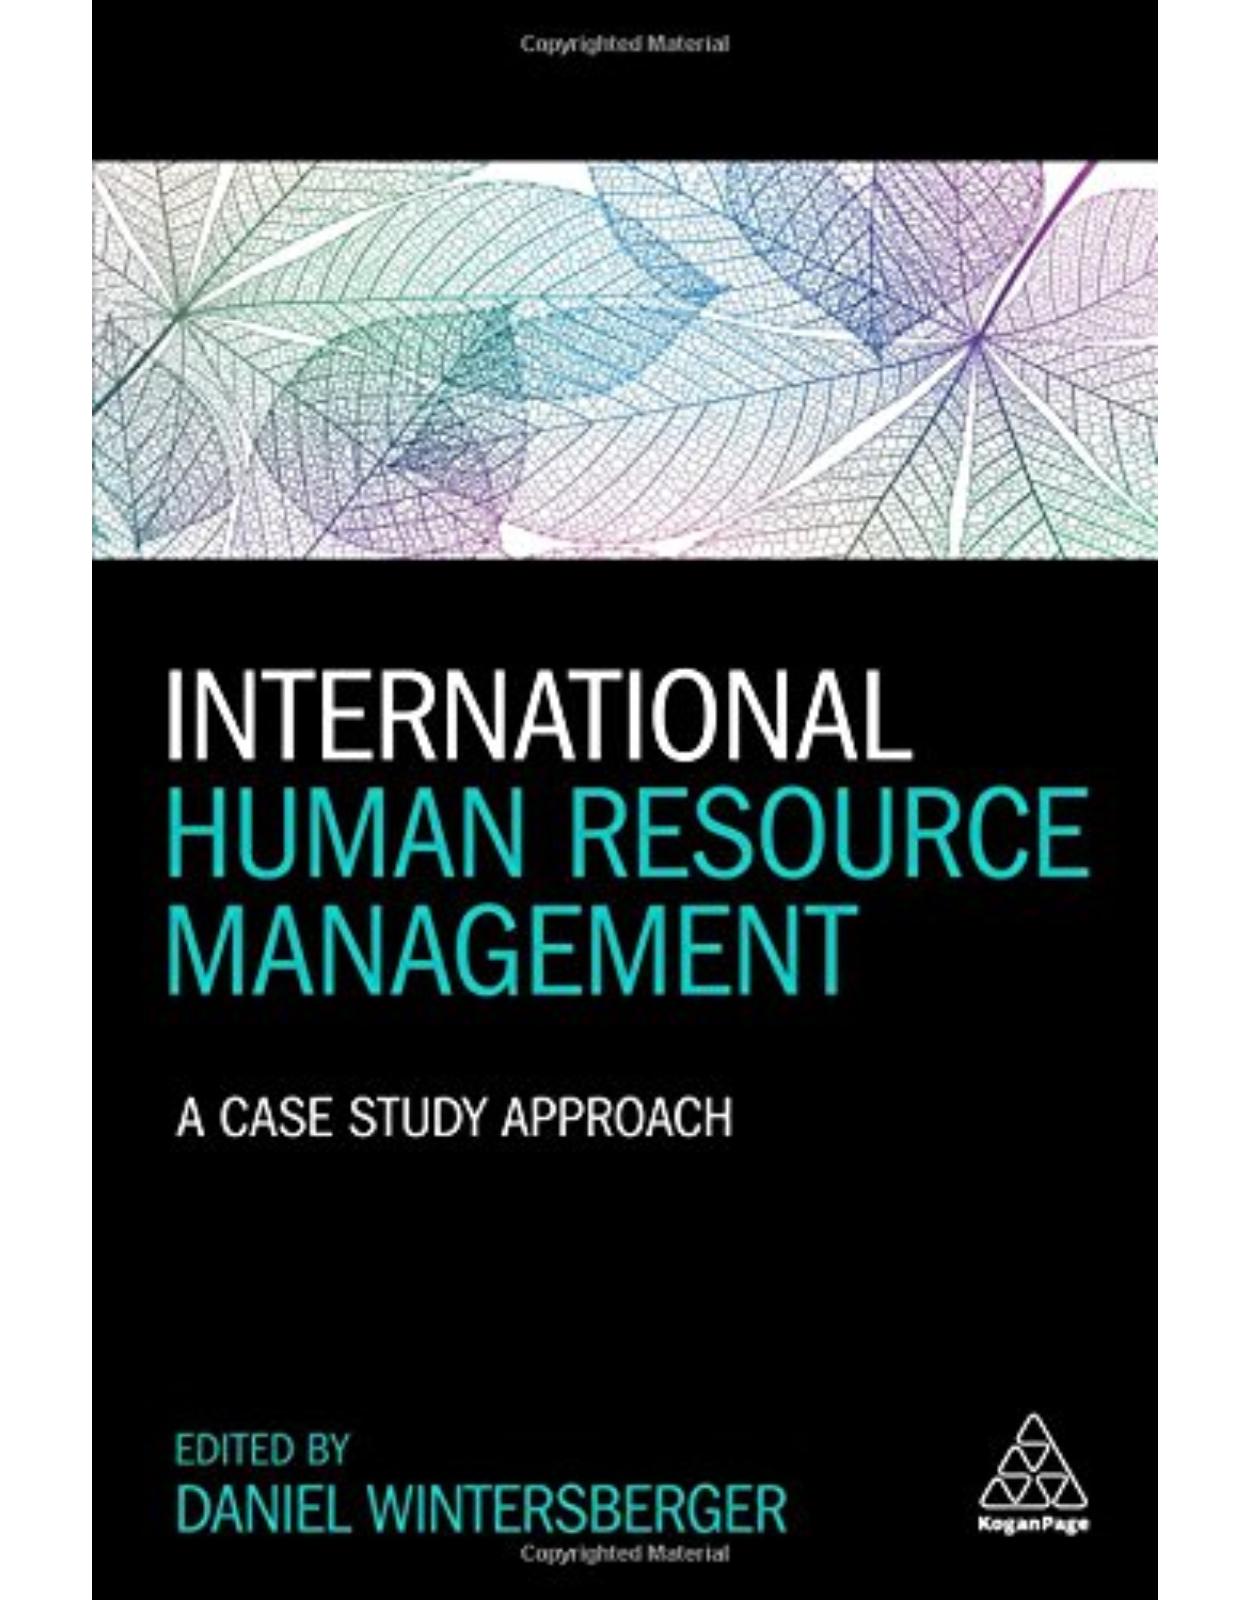 International Human Resource Management: A Case Study Approach